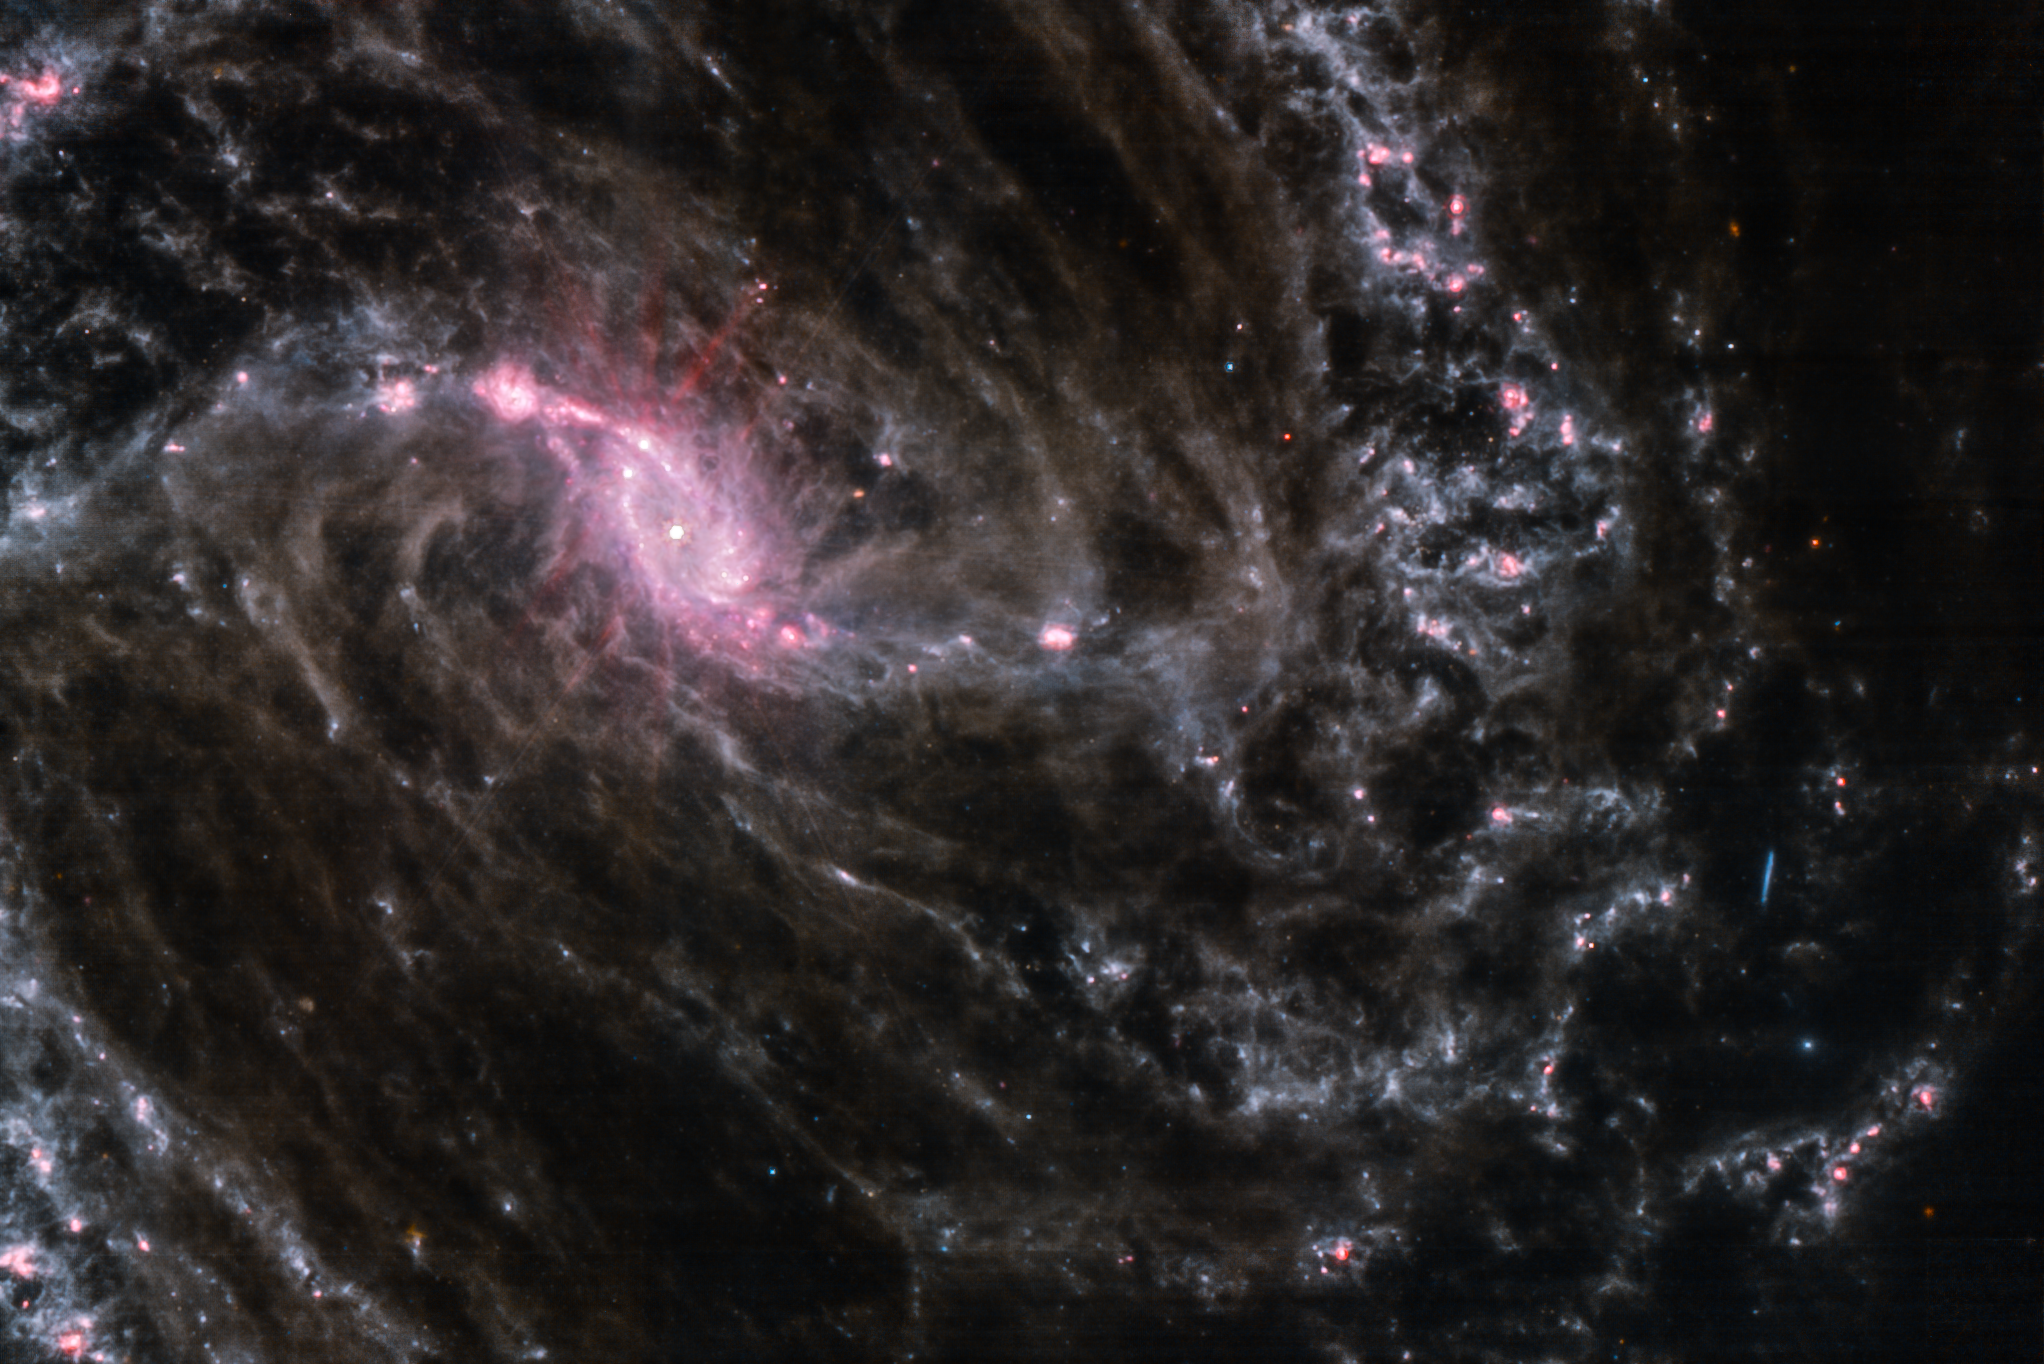 Espace : une image de la Voie Lactée en très haute définition dévoilée